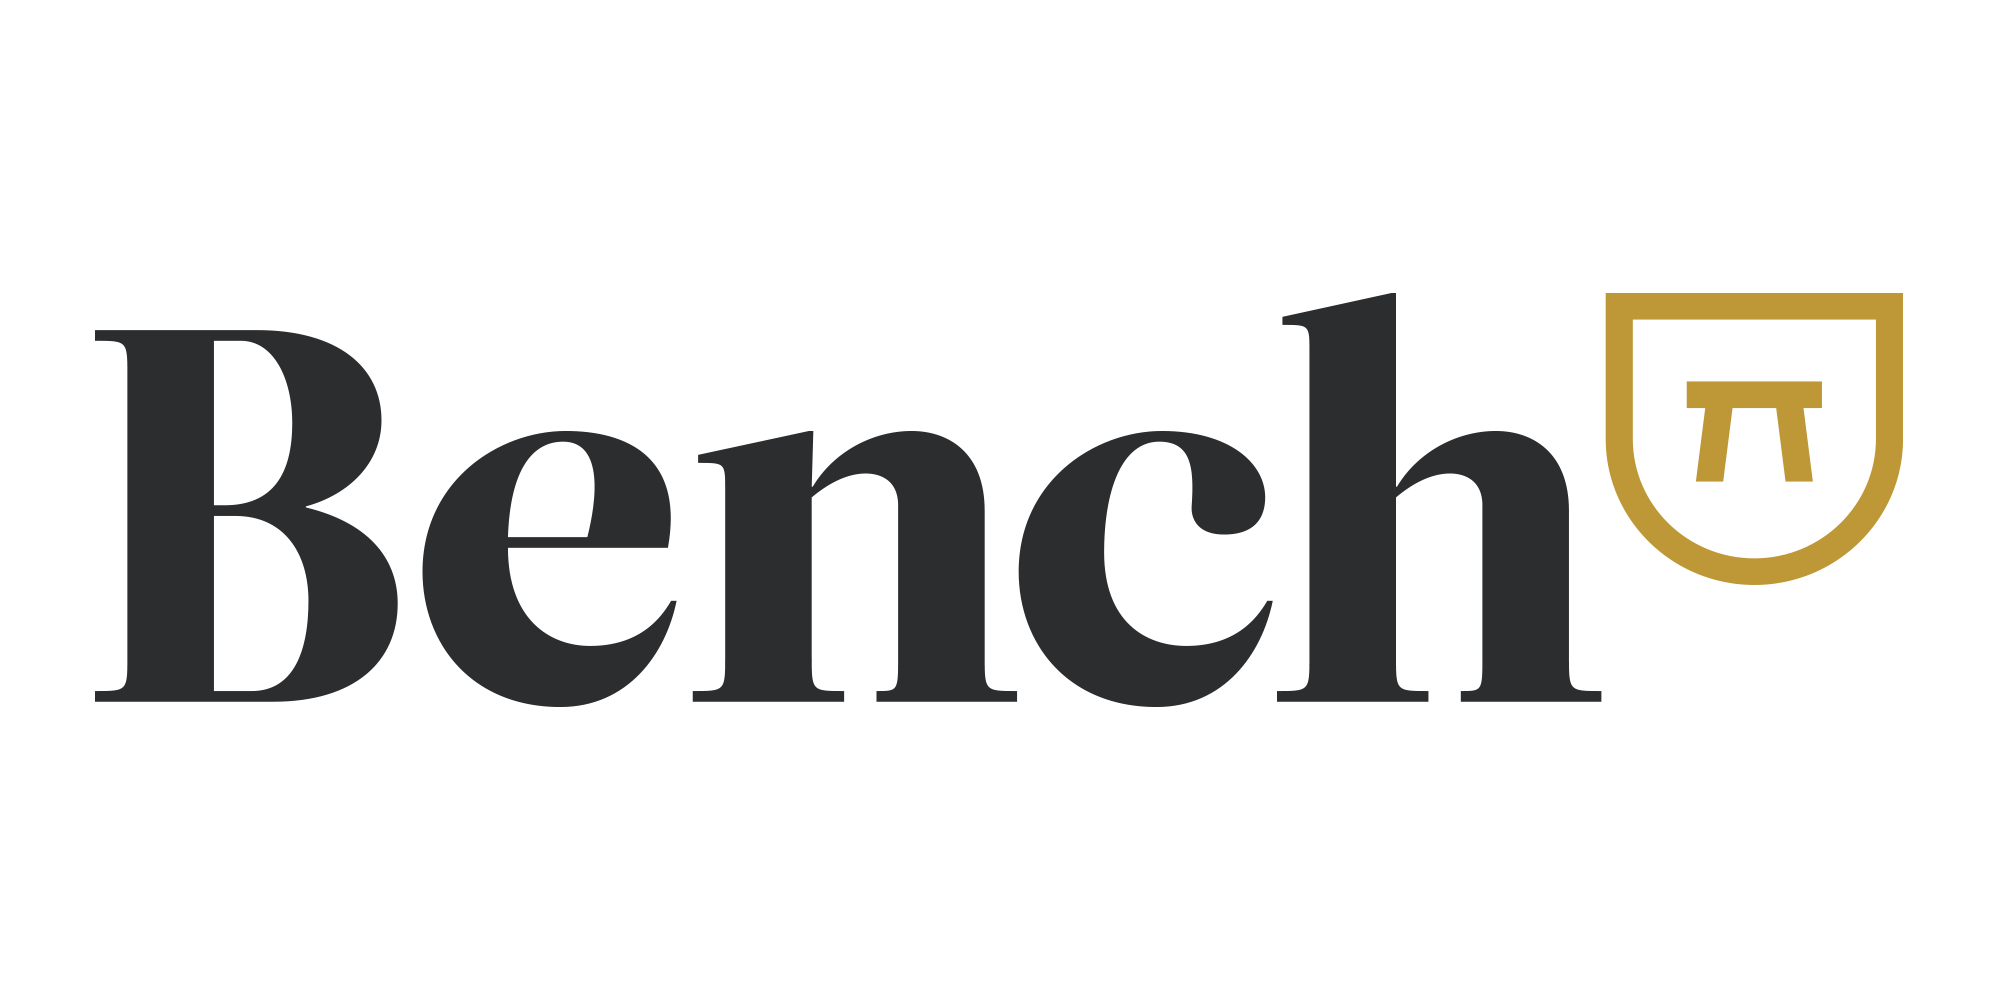 Bench-Full-Lockup-RGB (1)